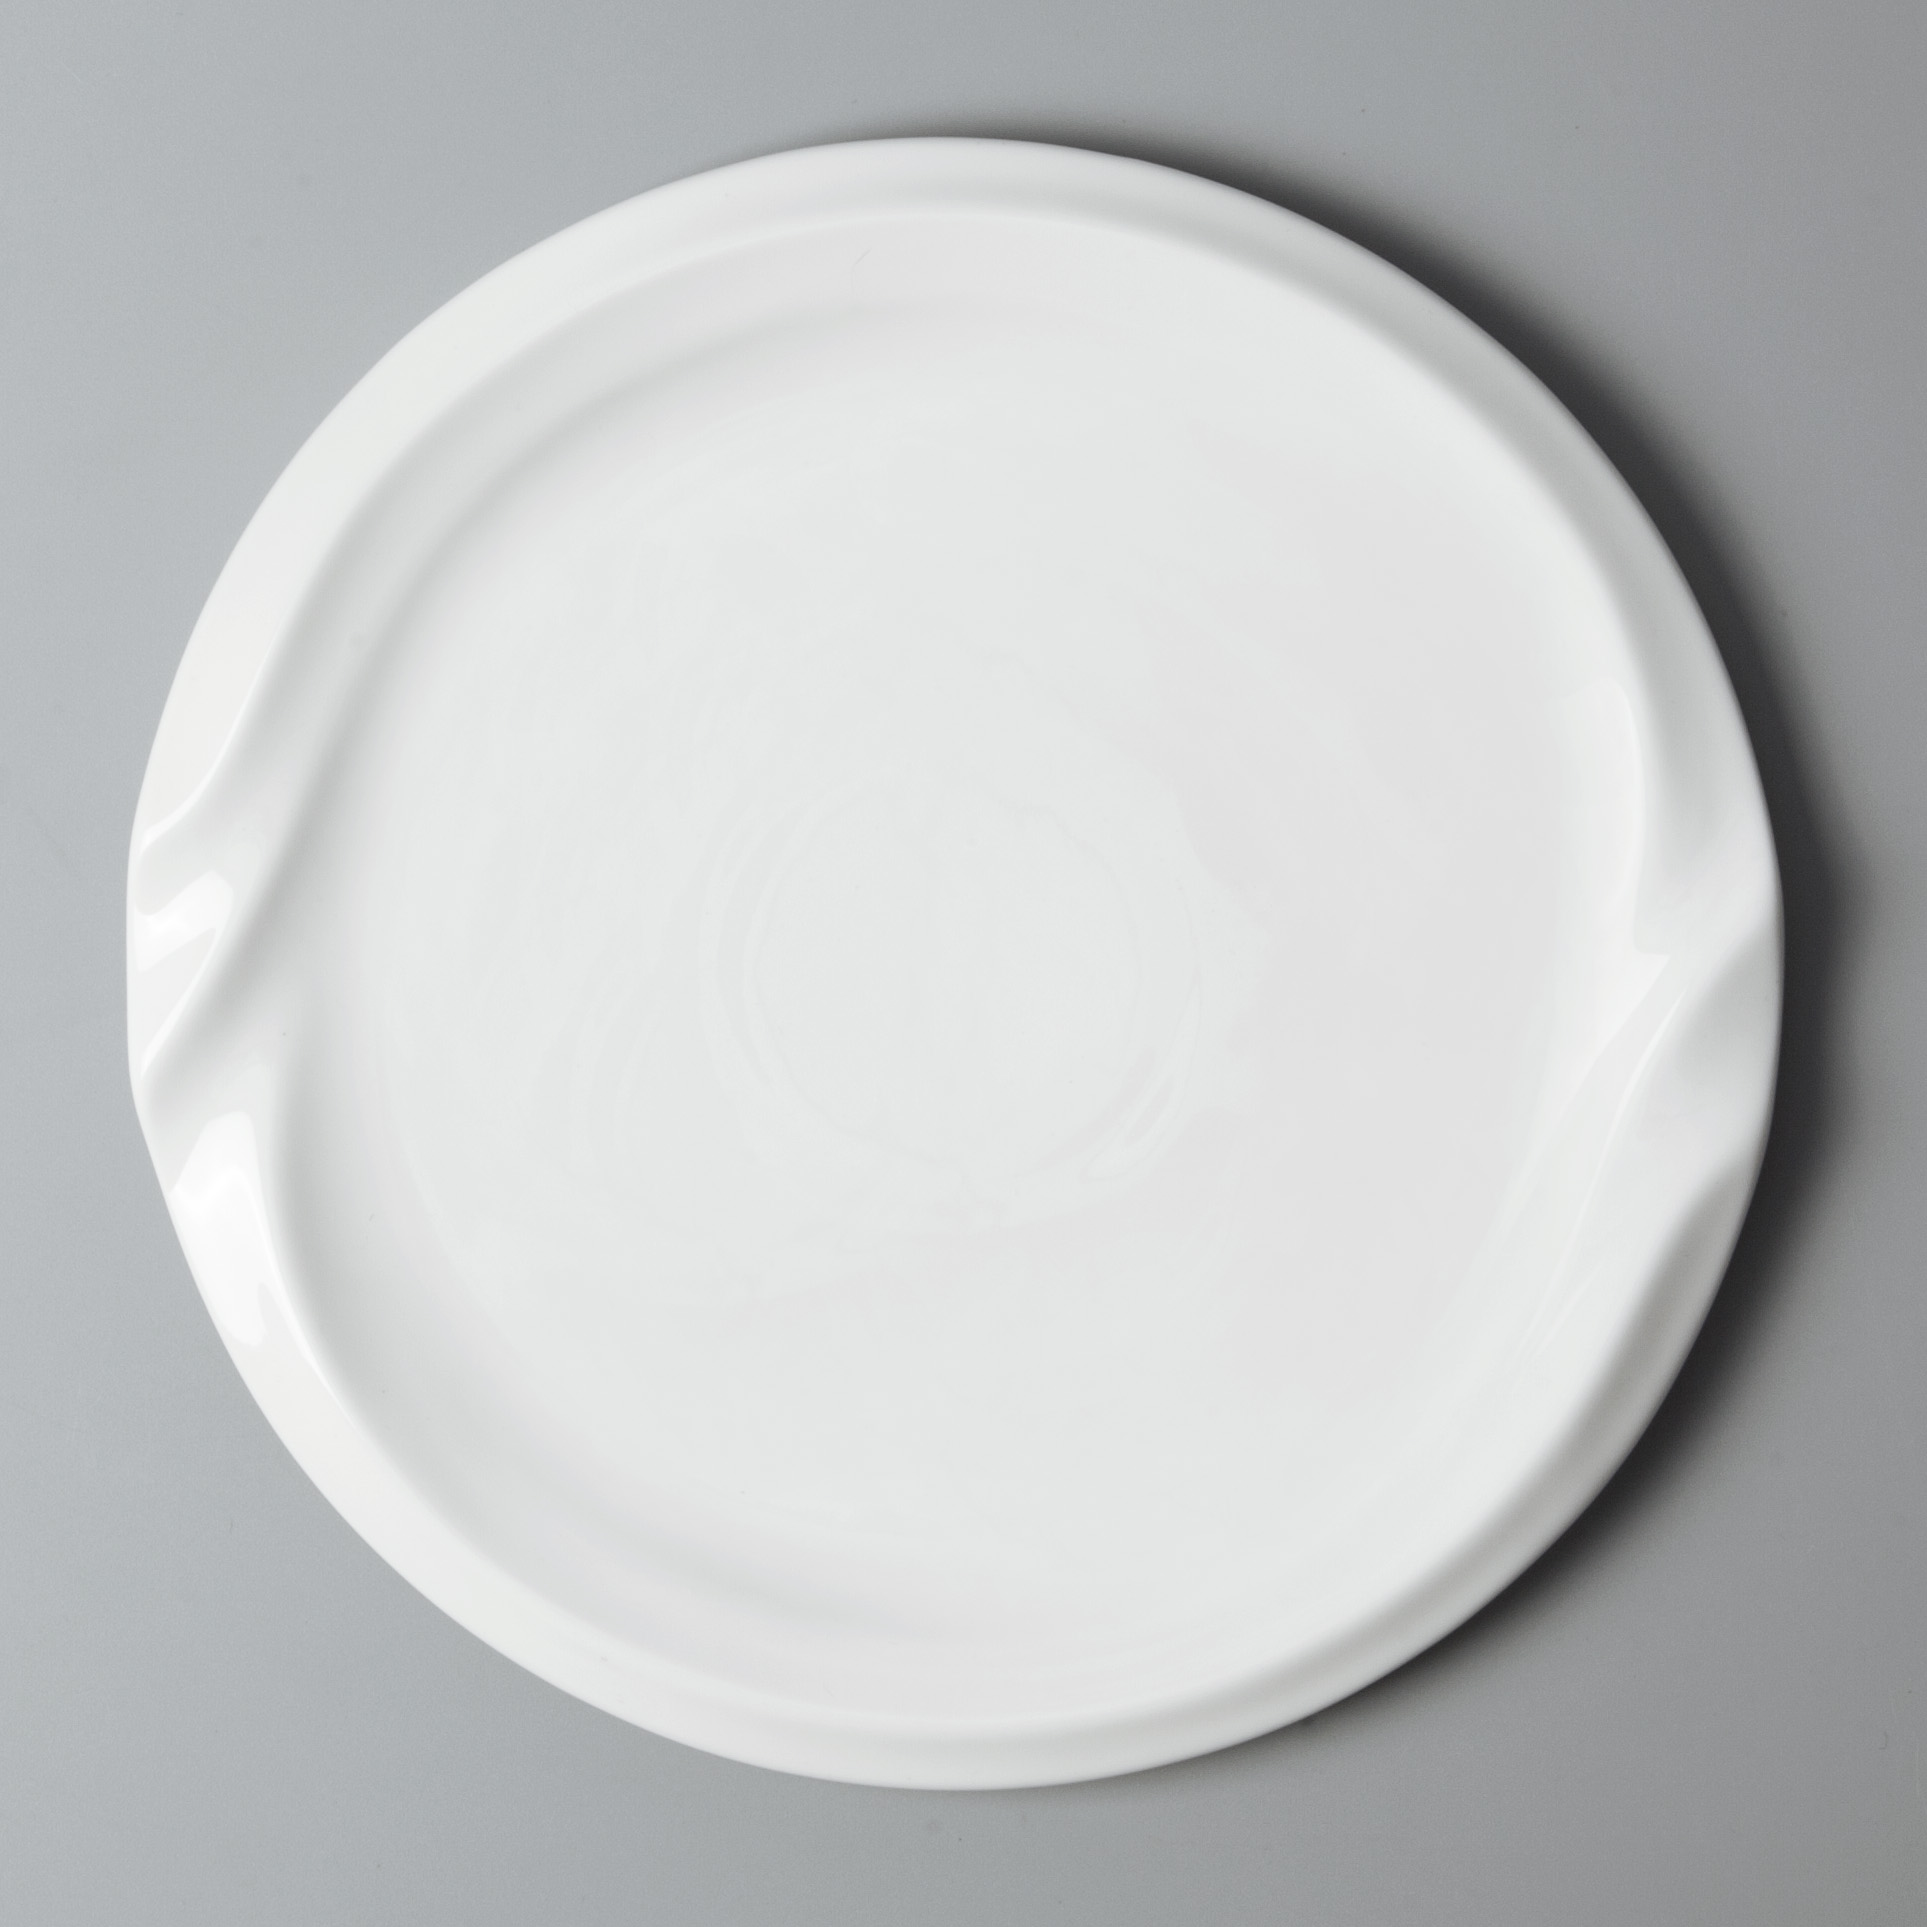 sample fine ceramic dinnerware stock for dinning room Two Eight-11